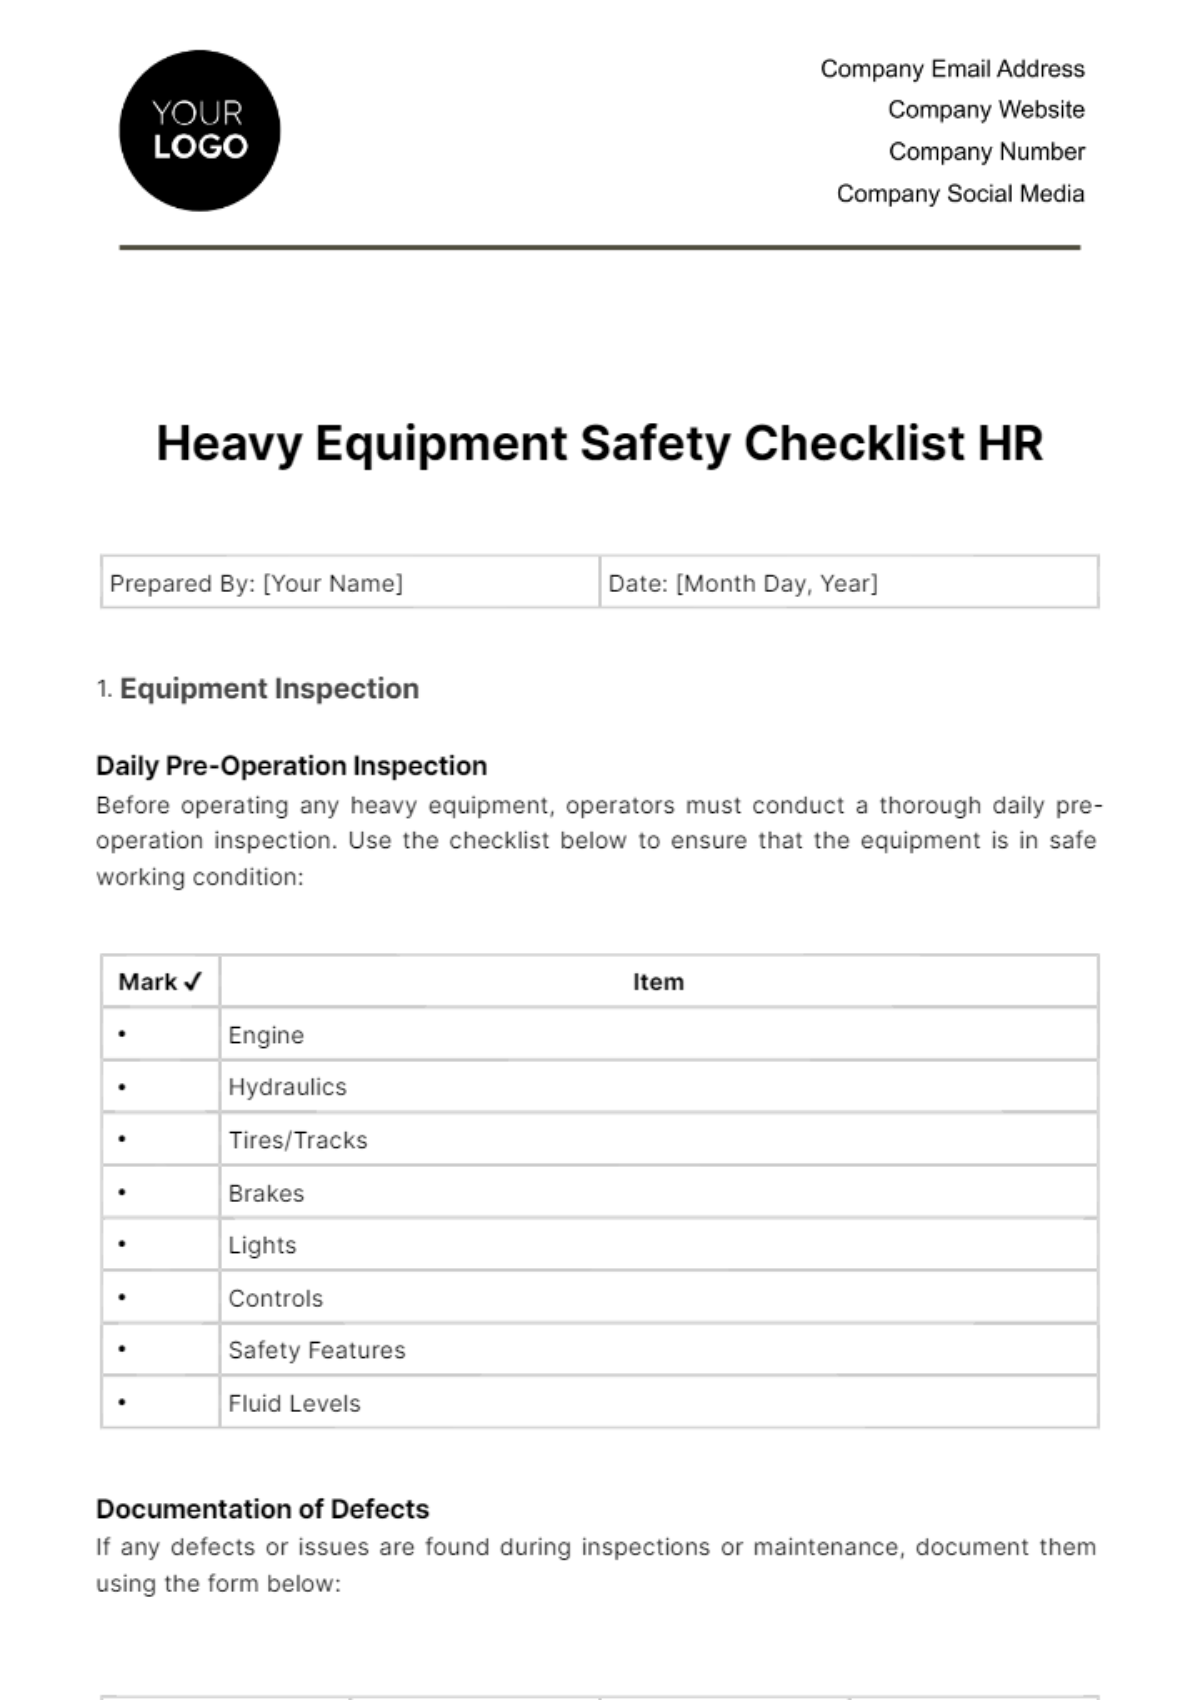 Heavy Equipment Safety Checklist HR Template